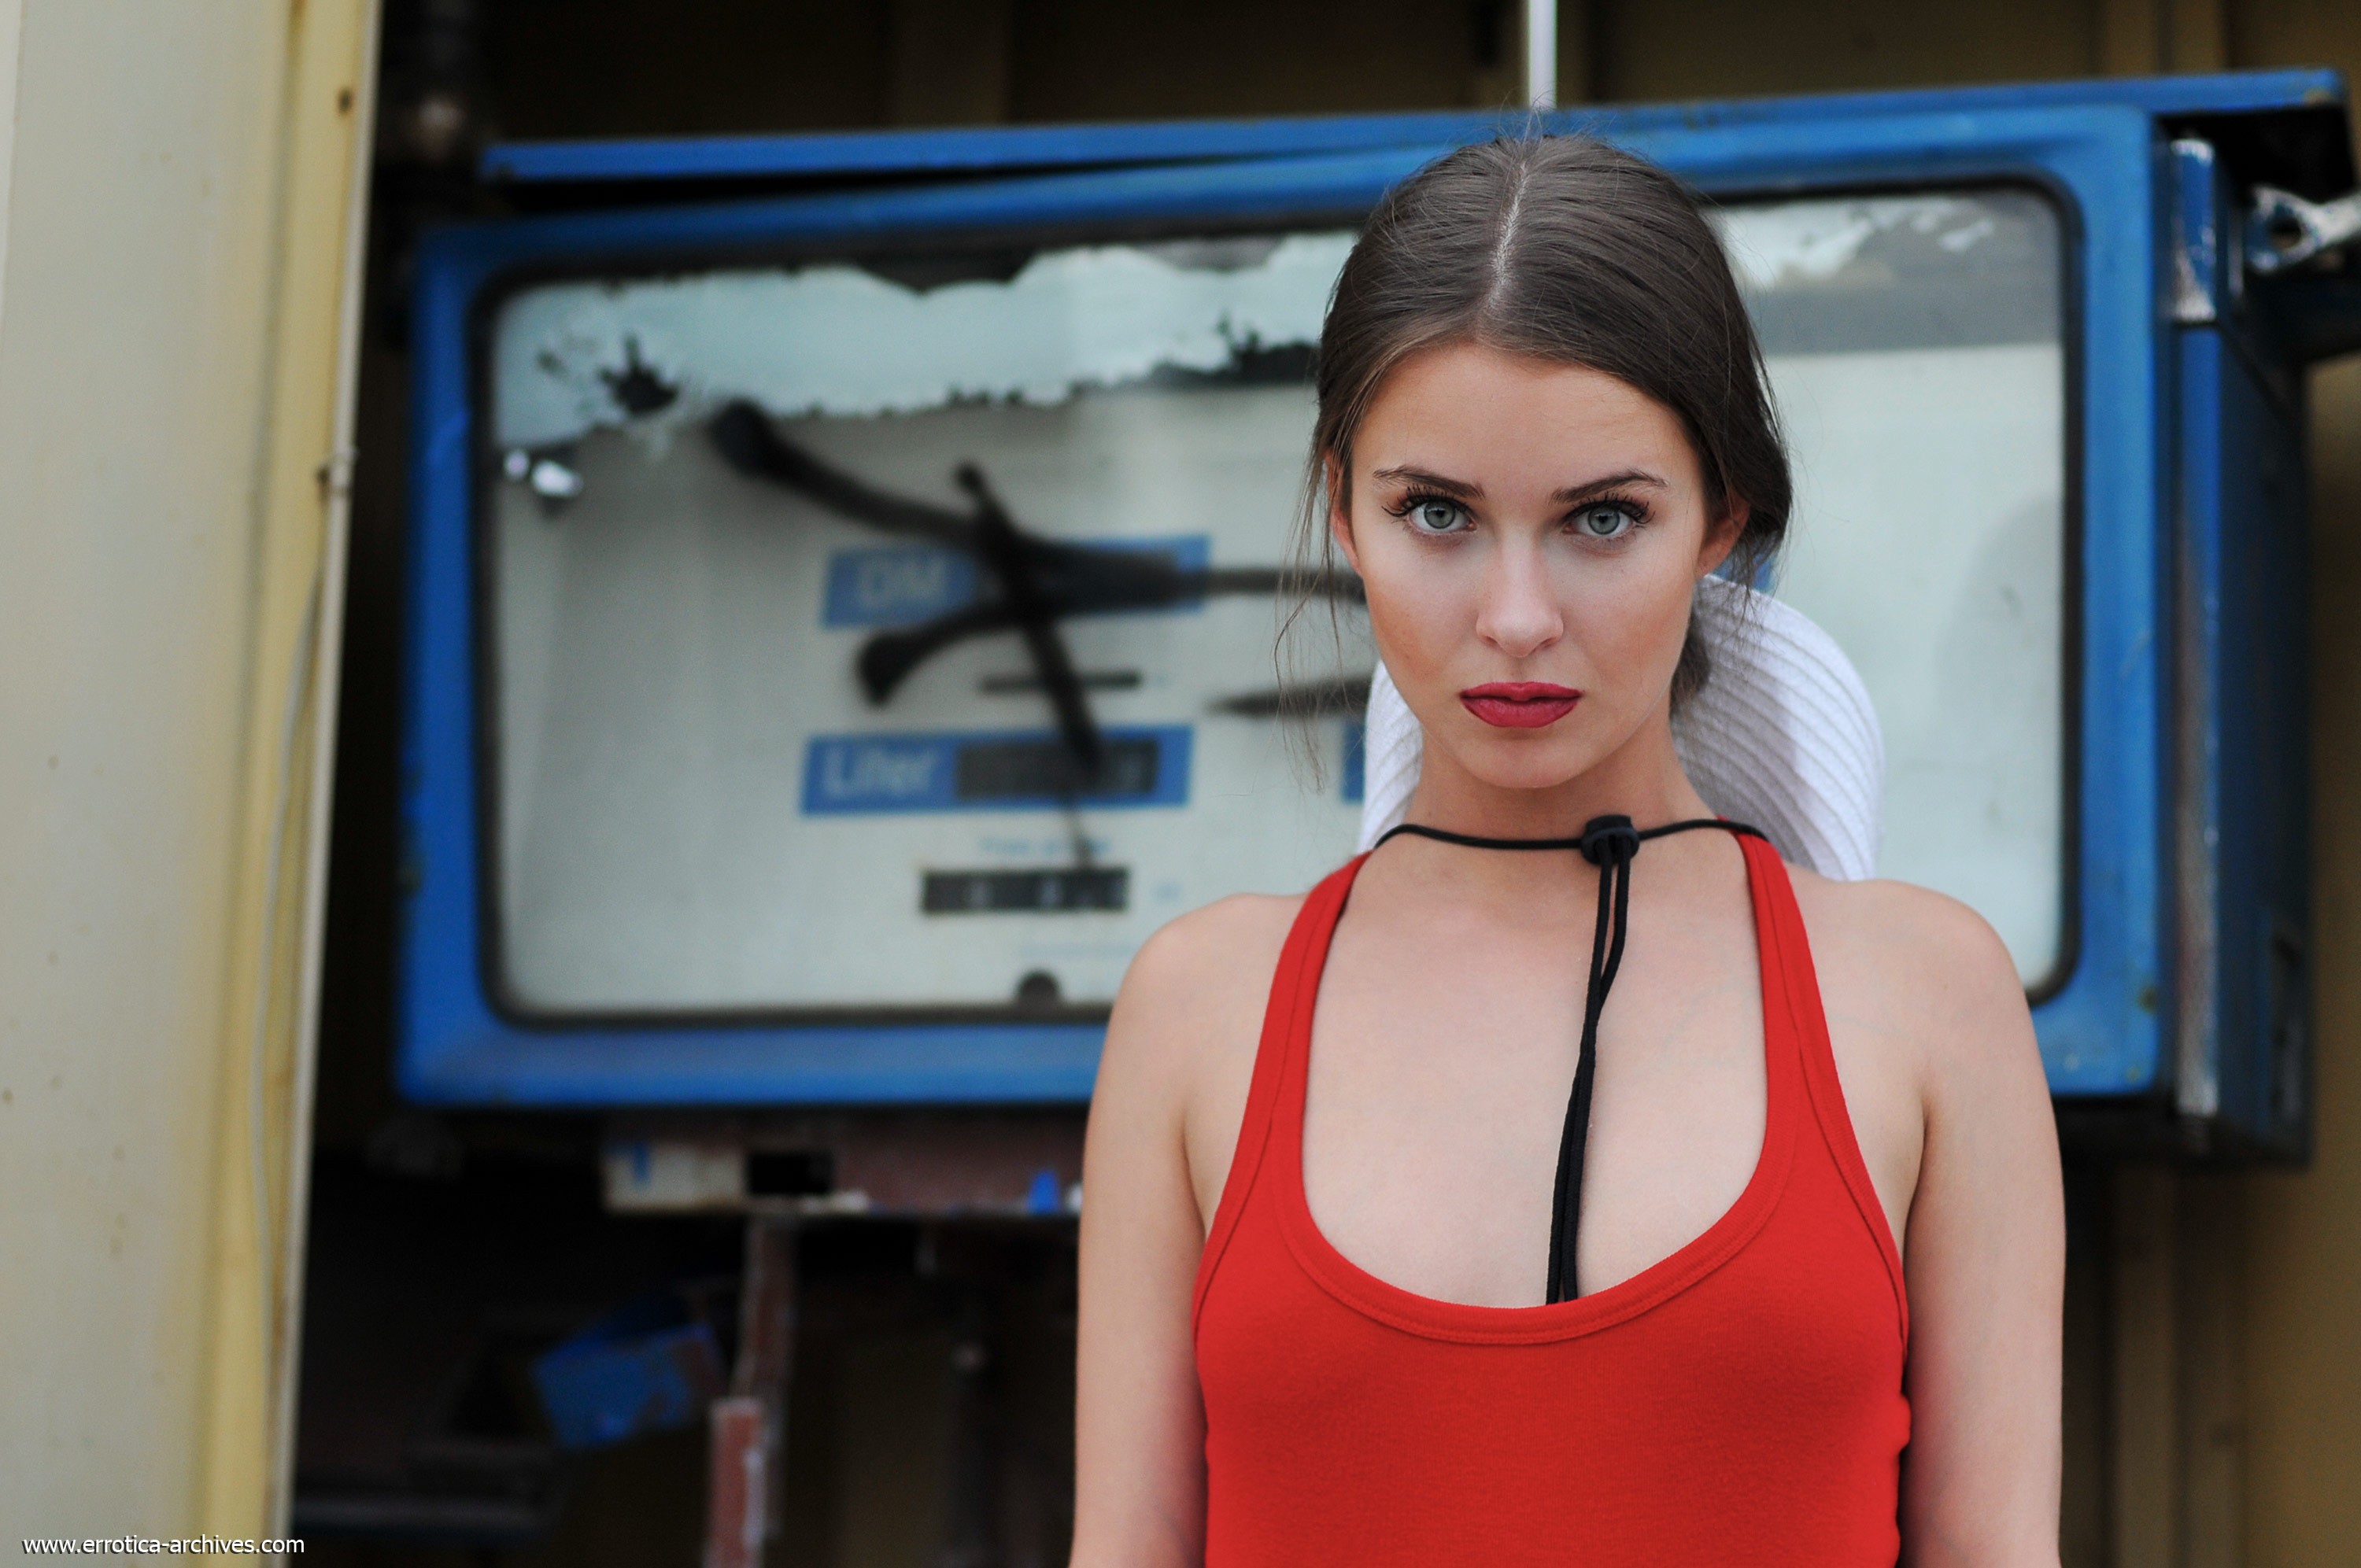 Модель Валентина Наппи с чокером на шее светит большими сиськами в бикини